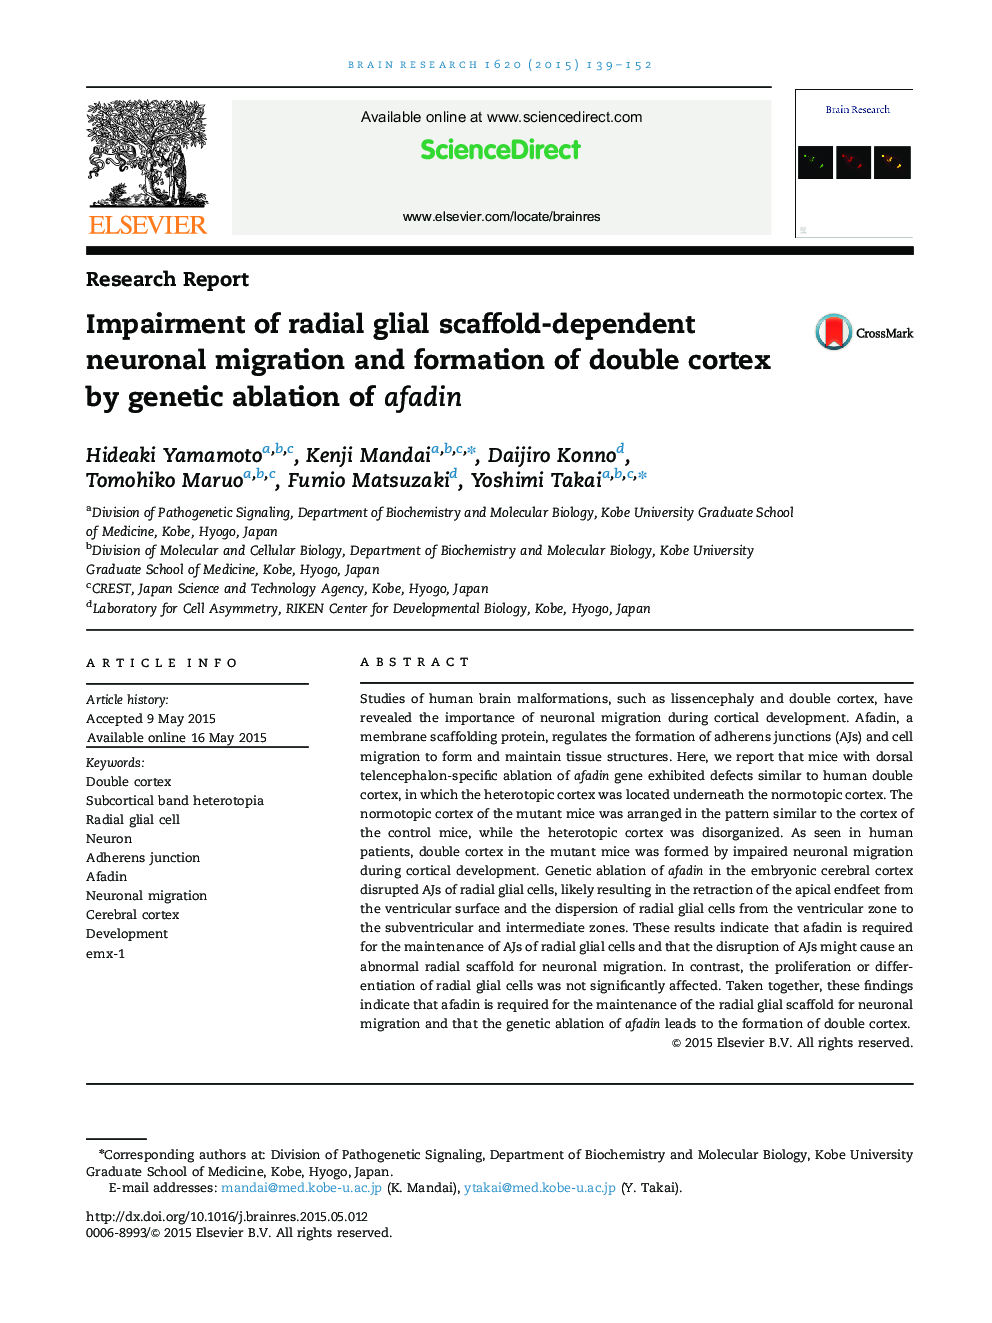 تحقیقات گزارش شده در مورد مهاجرت نورونی وابسته به داربست شعاعی گلیالی و شکل دهی قشر دوطرفه توسط تخلیه ژنتیکی افادین 